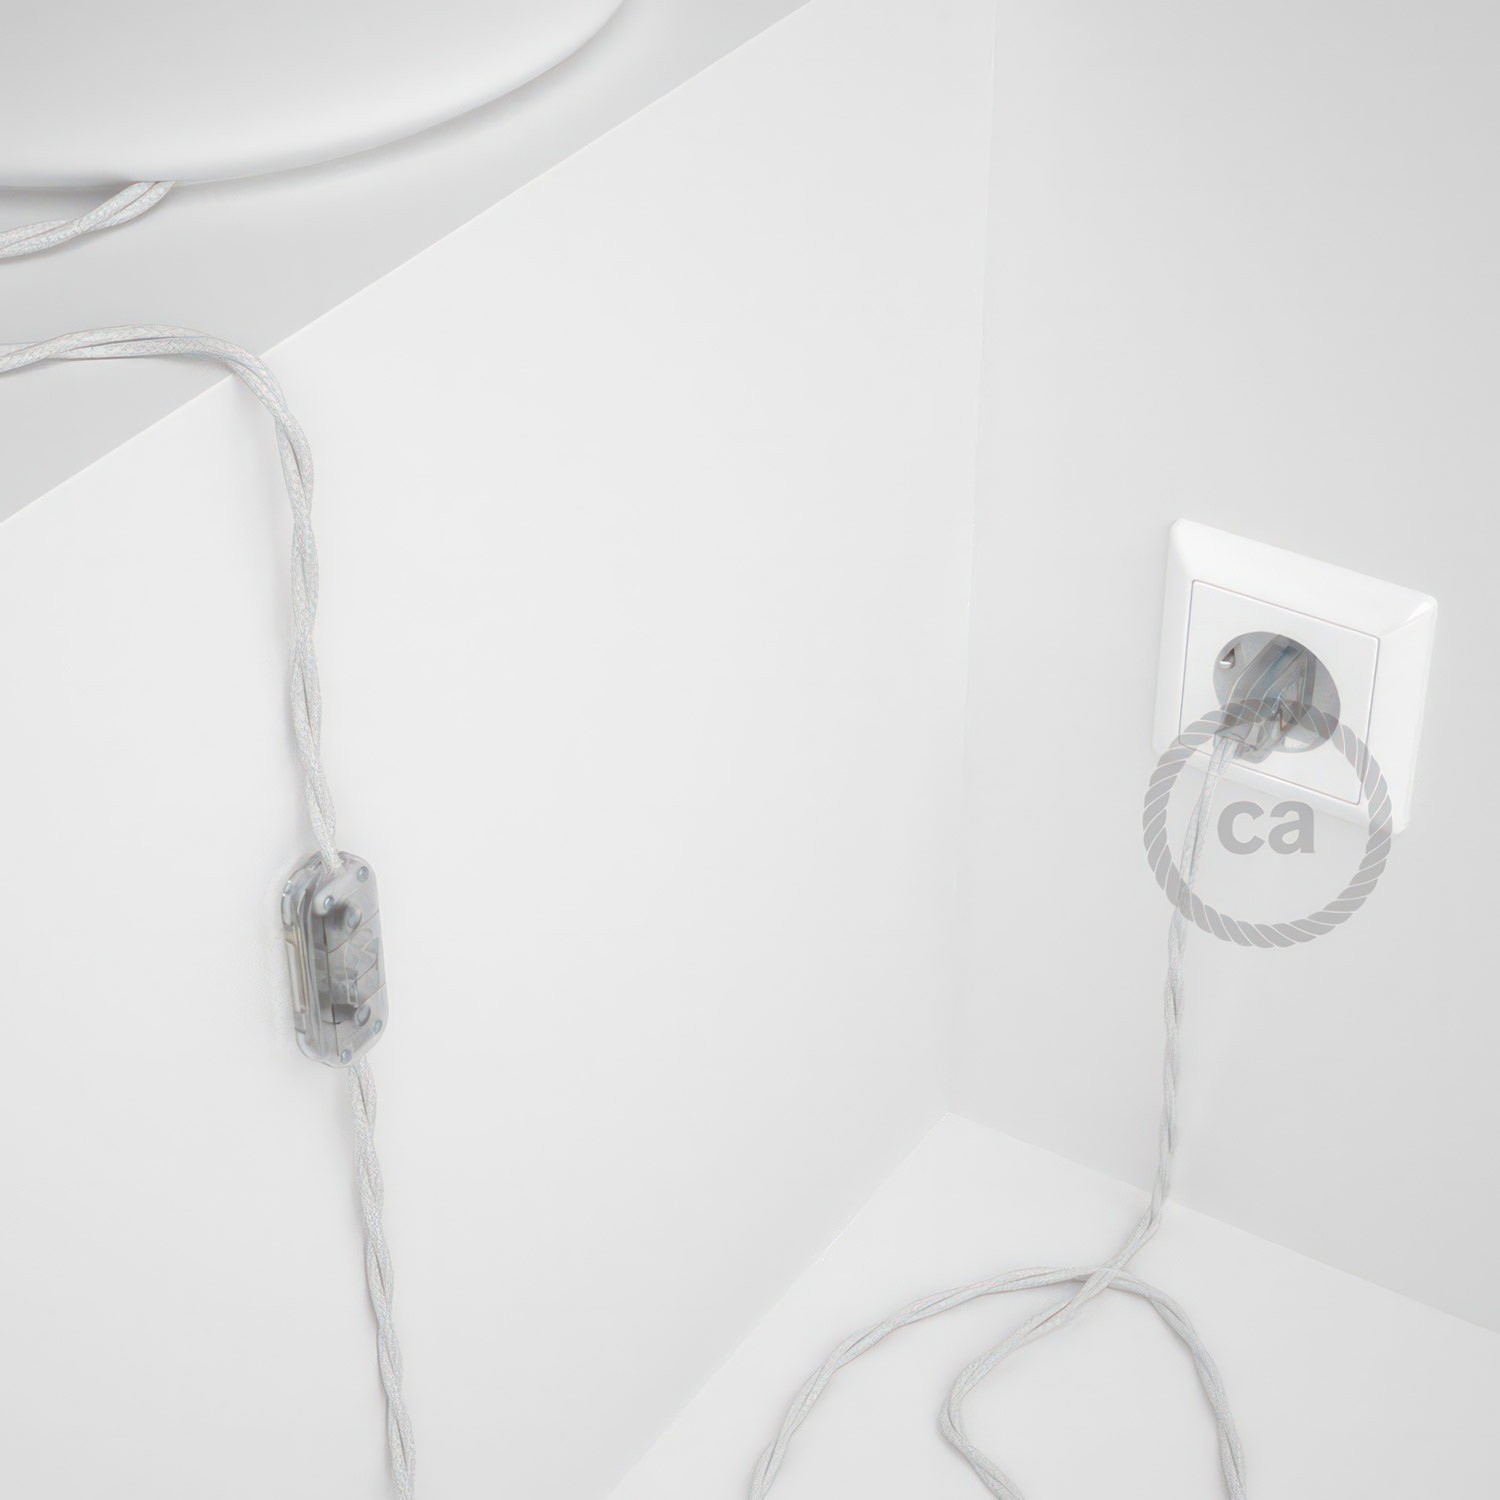 Cableado para lámpara, cable TC01 Algodón Blanco 1,8m. Elige tu el color de la clavija y del interruptor!